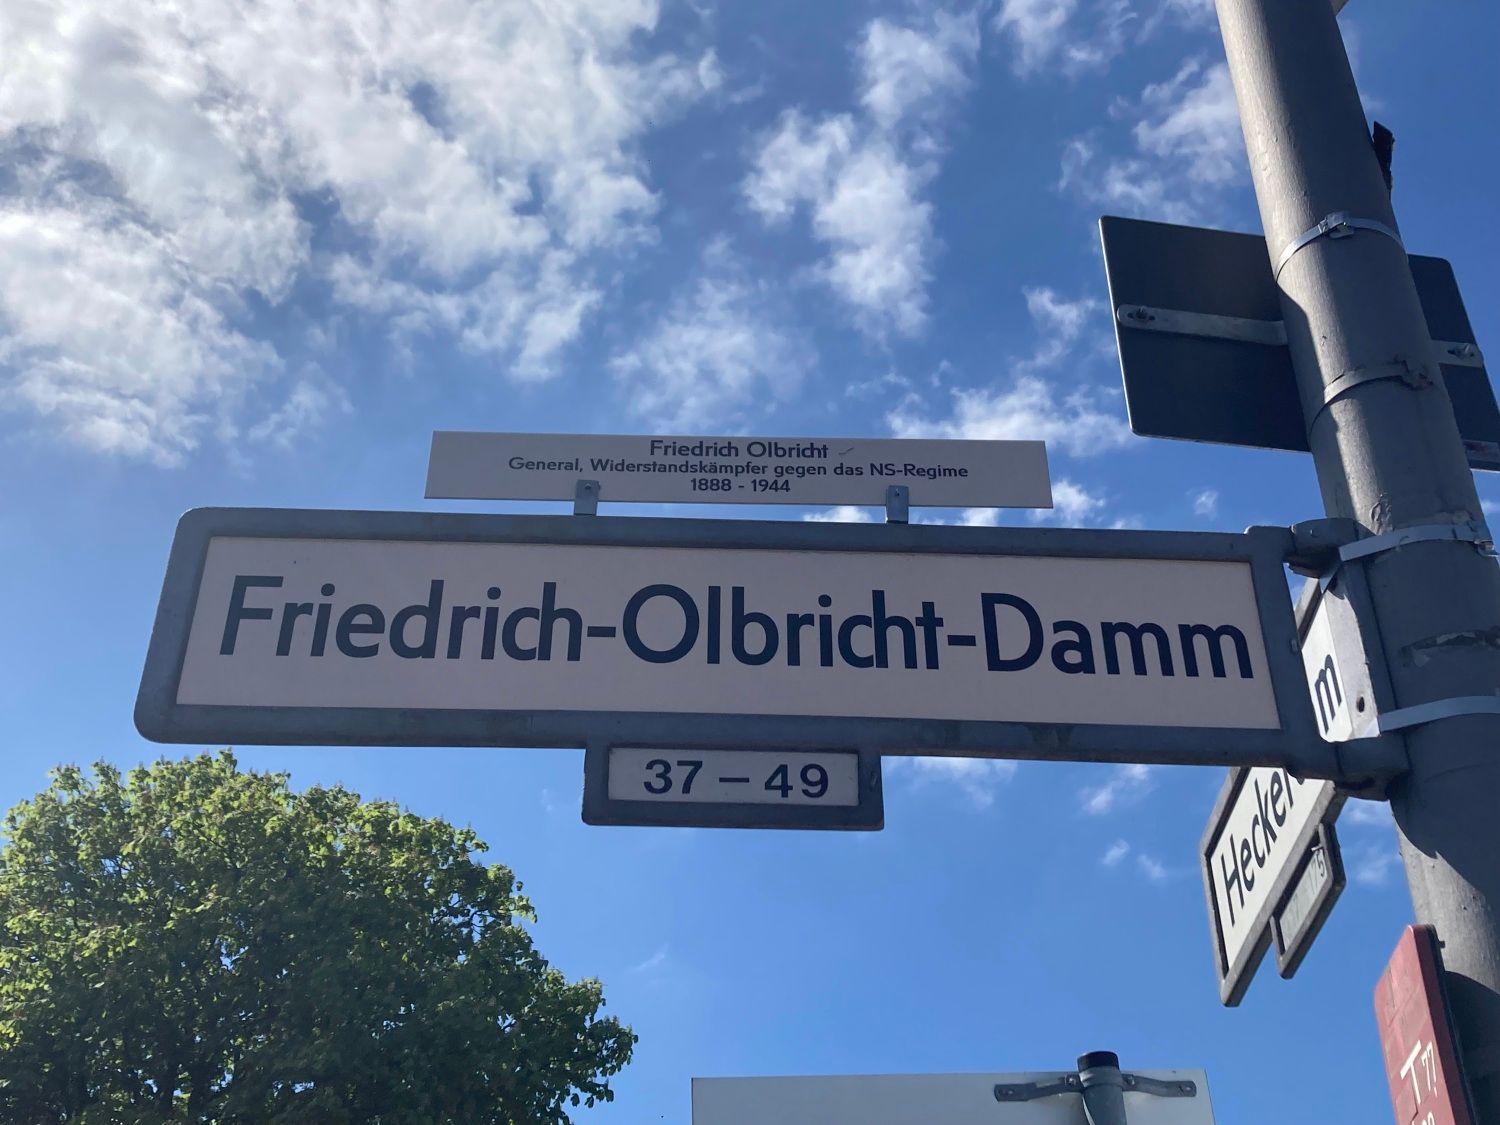 Friedrich-Olbricht-Damm